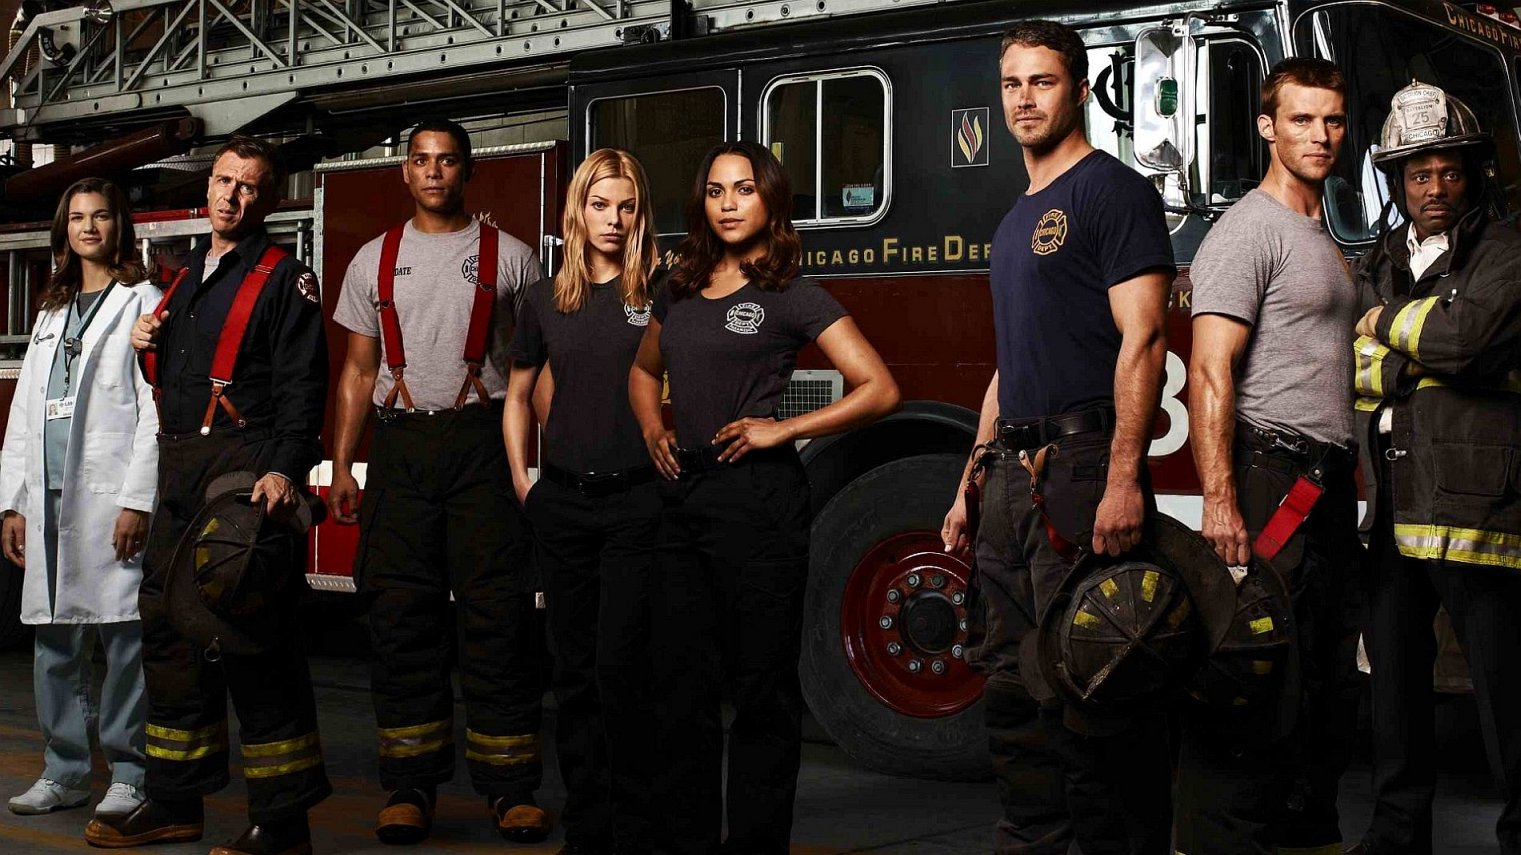 Chicago Fire season 6 episode 10 watch online